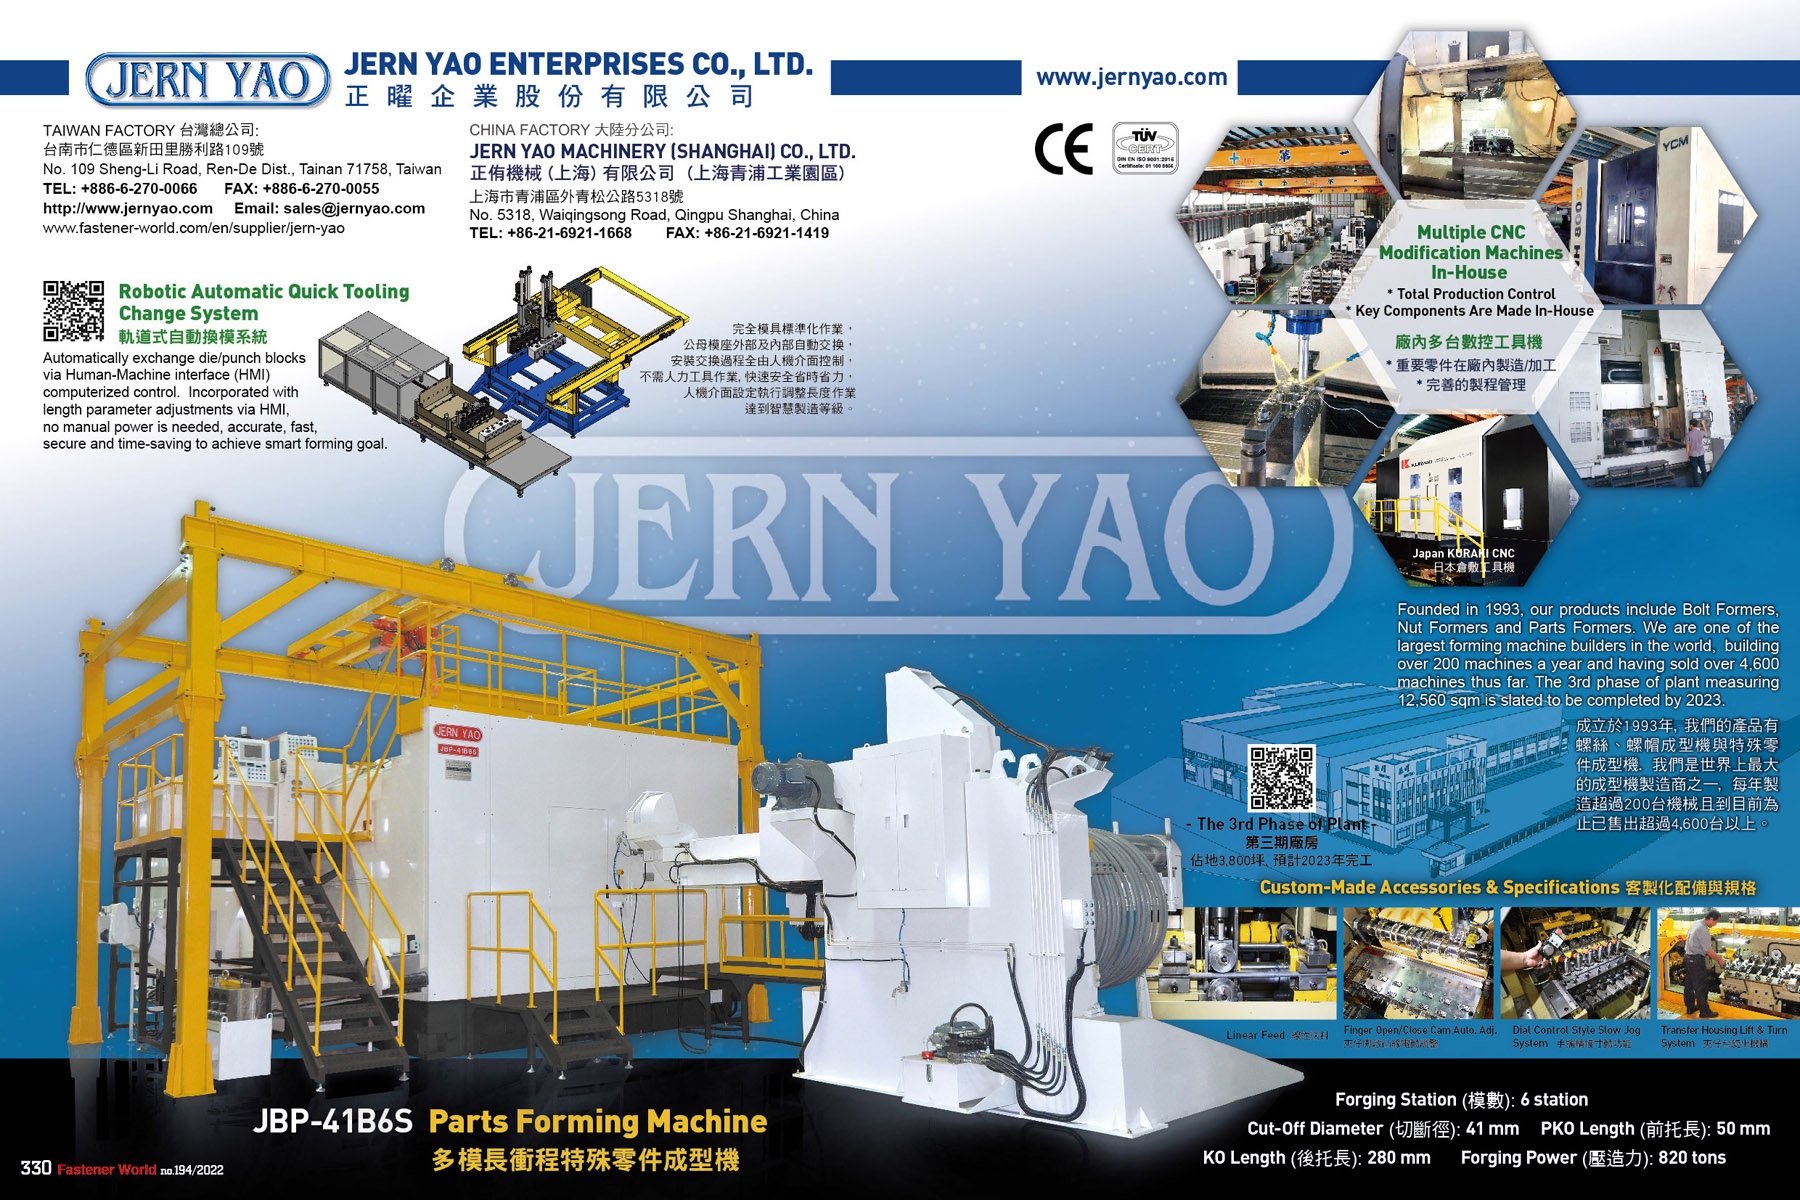 JERN YAO ENTERPRISES CO., LTD.  , JBP-41B6S Parts Forming Machine